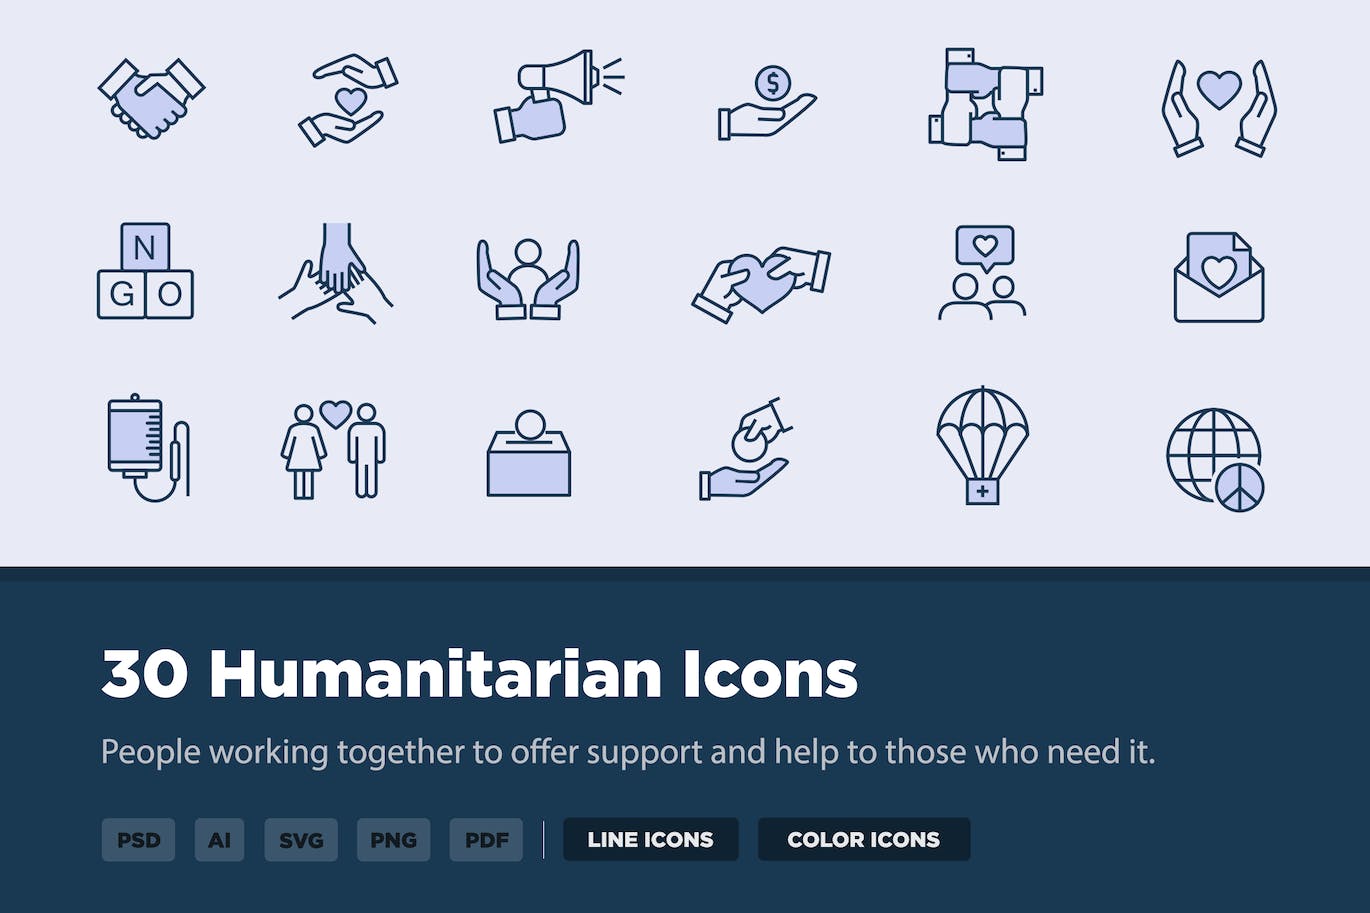 30个人道主义矢量图标 30 Humanitarian Icons 图标素材 第1张